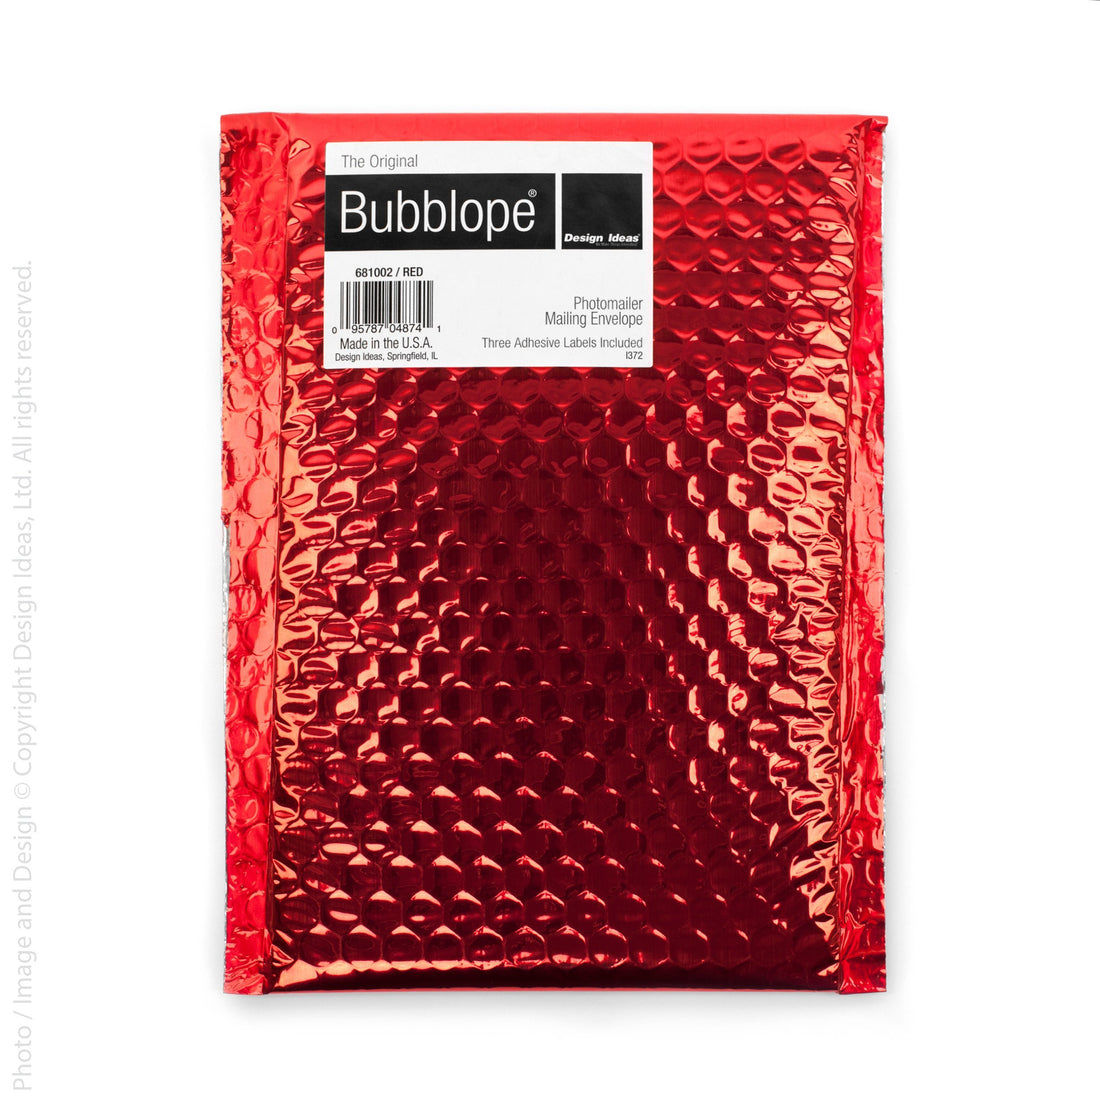 Bubblope® envelope (large)